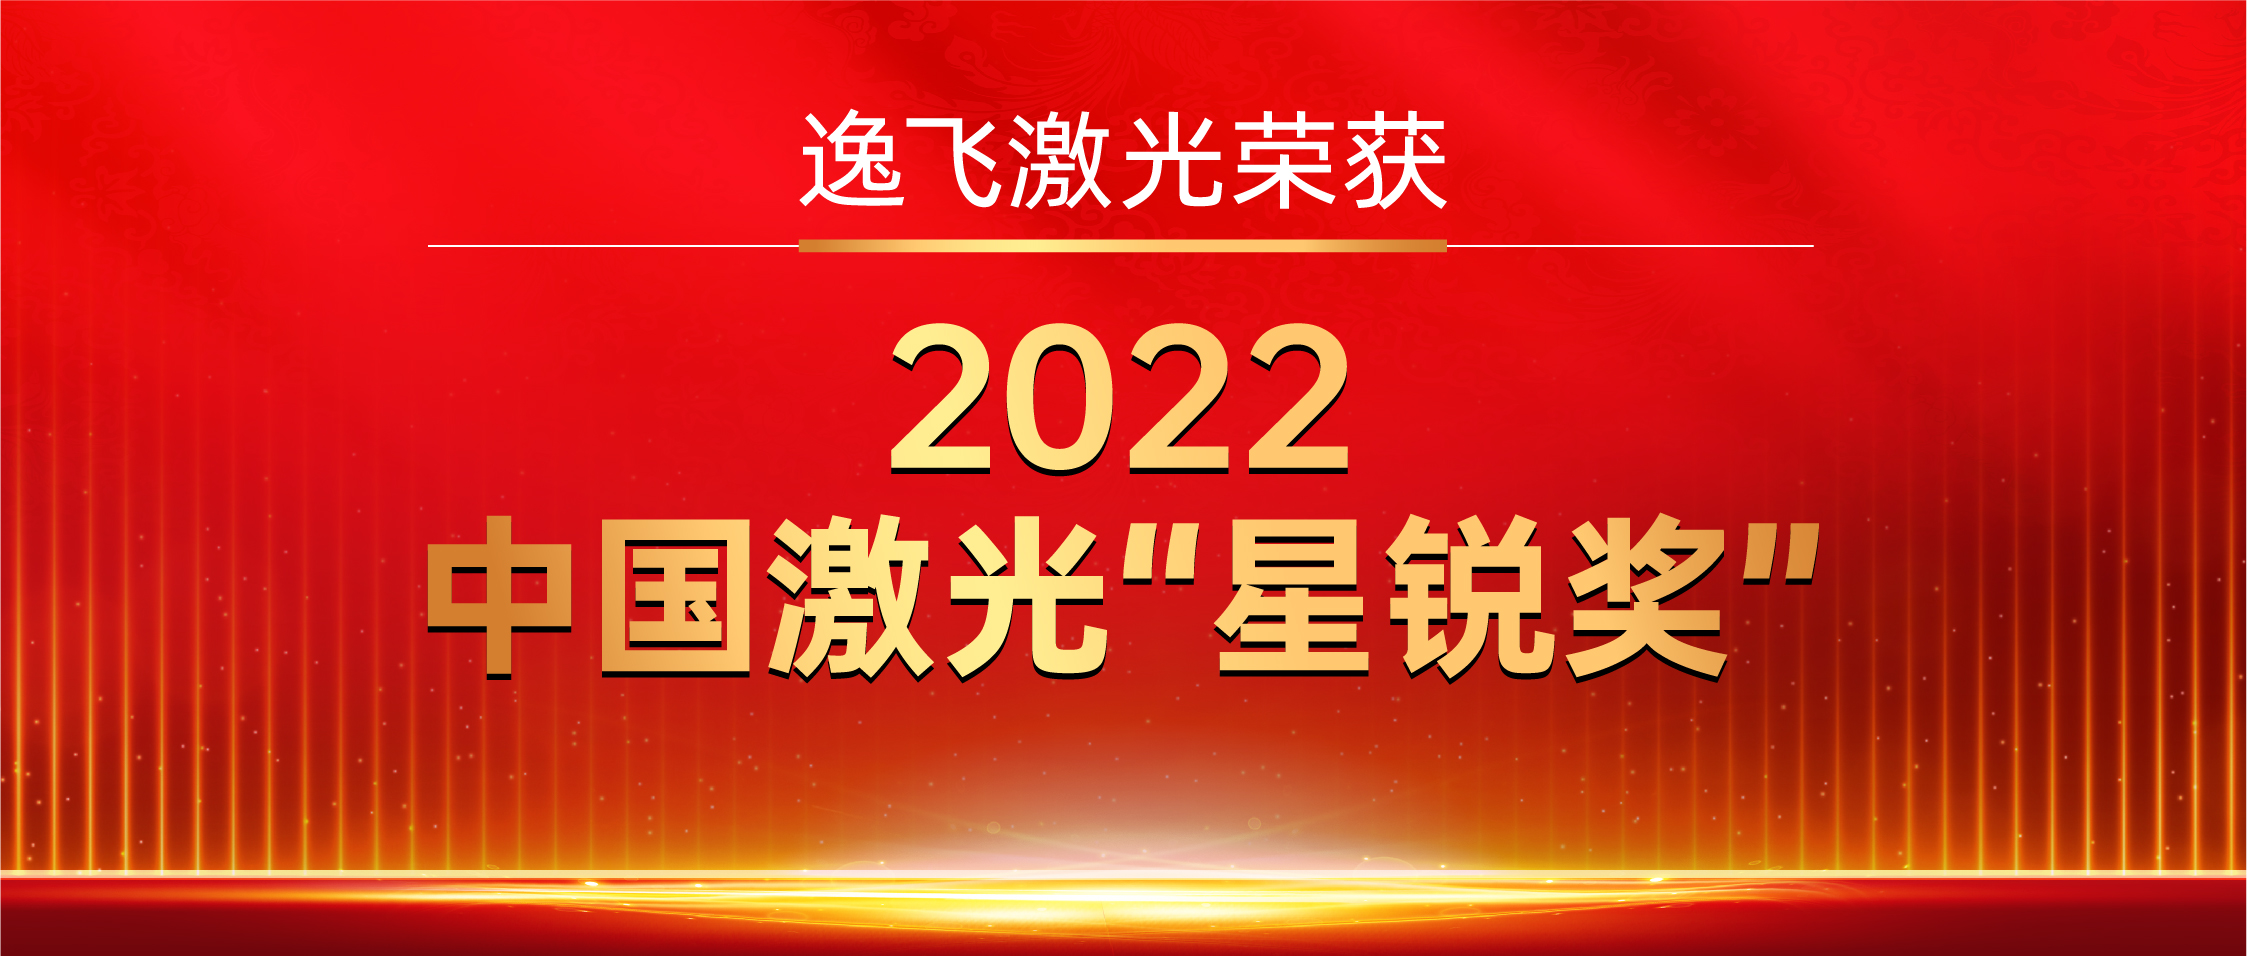 逸飞激光荣获“2022中国激光星锐奖”